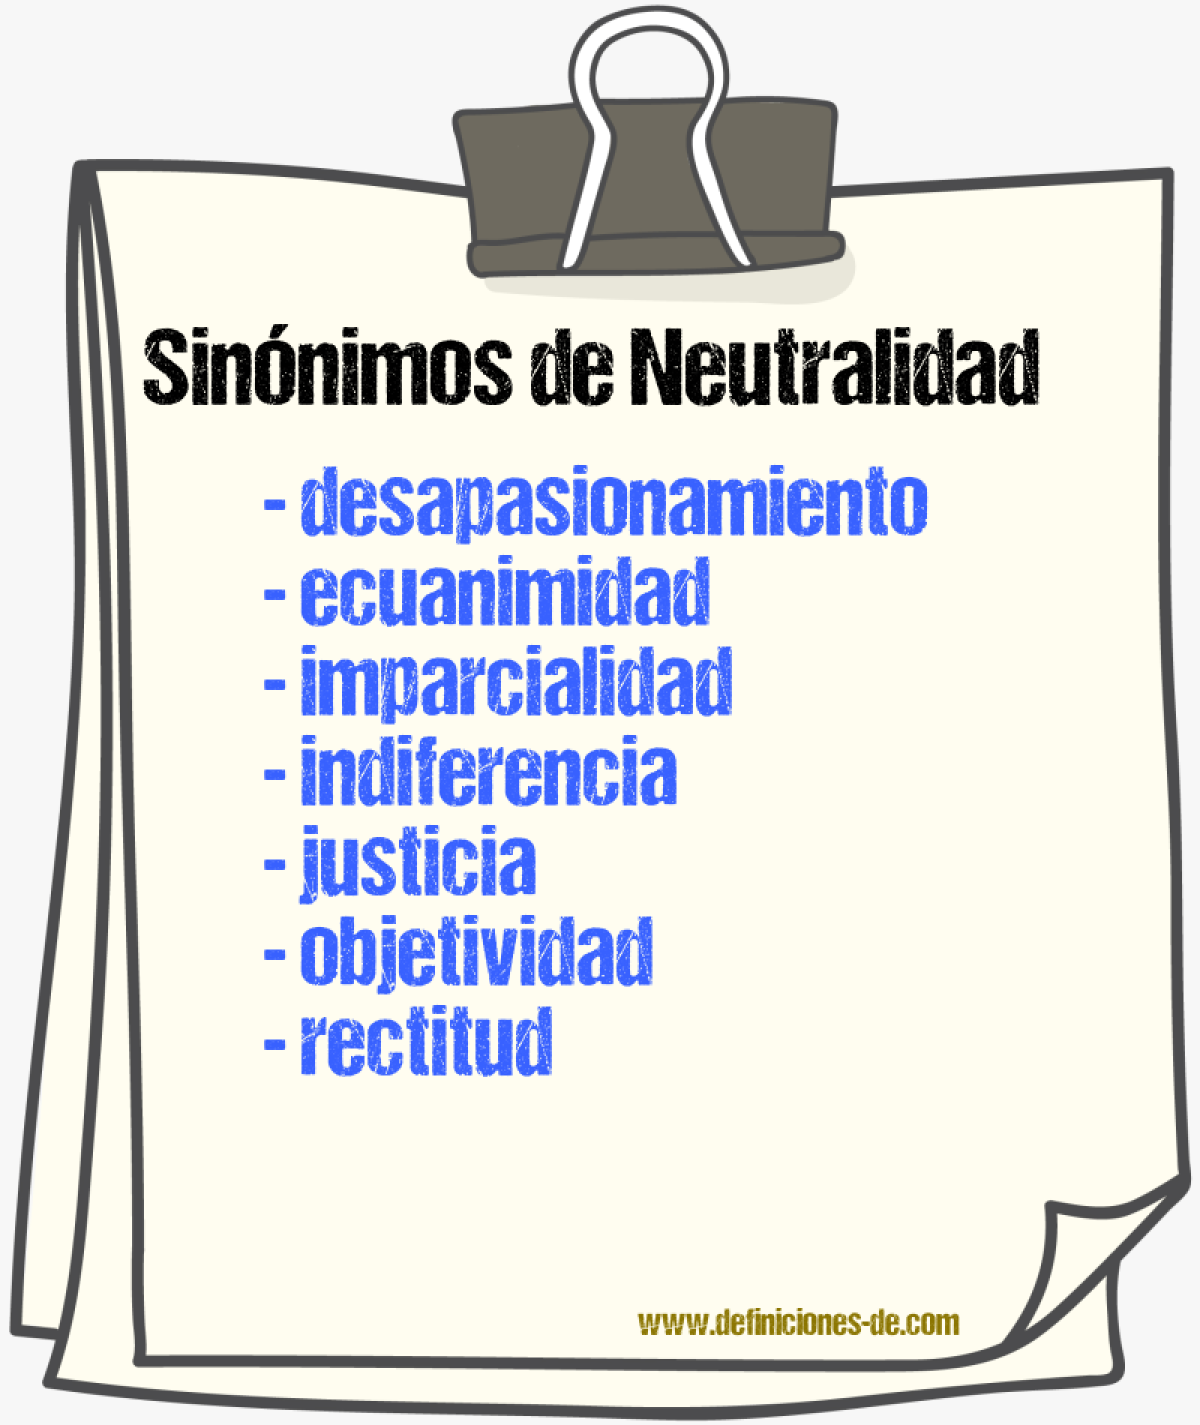 Sinónimos de neutralidad